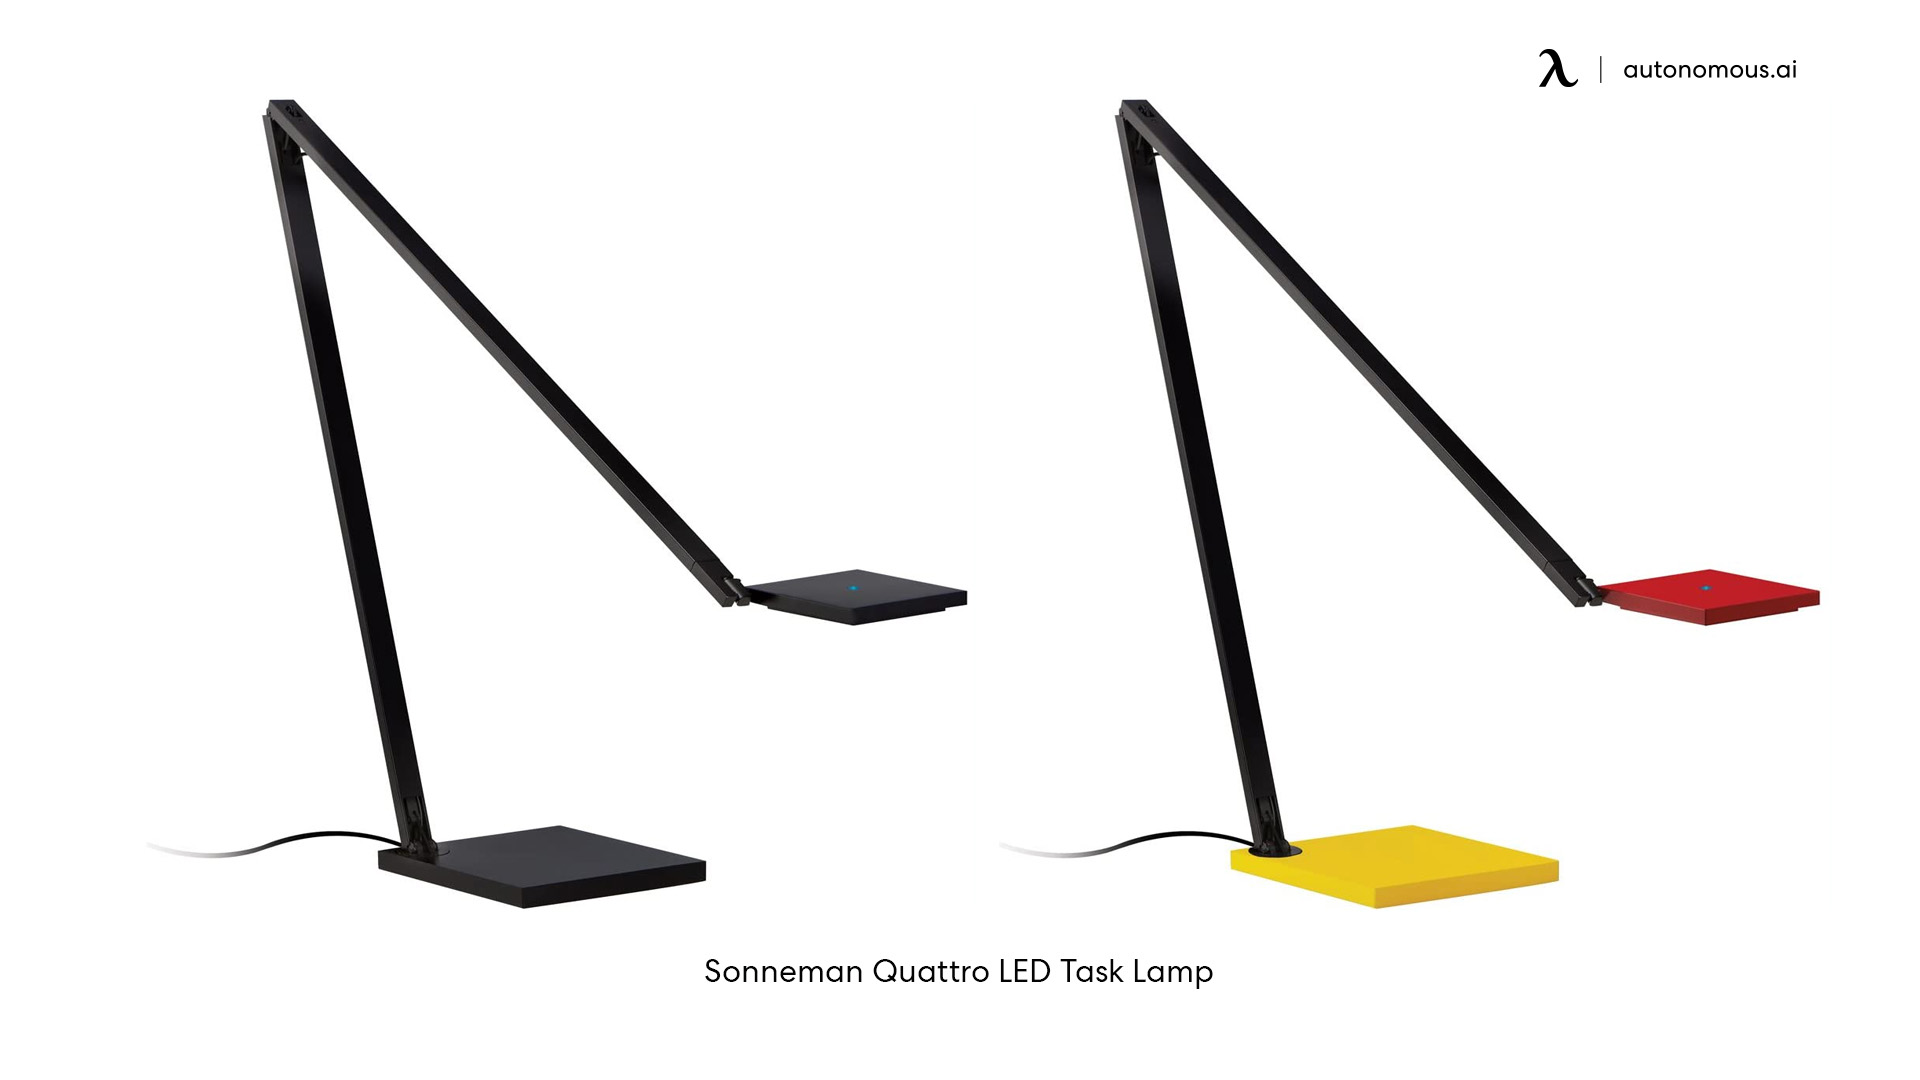 Sonneman Quattro LED Task Lamp